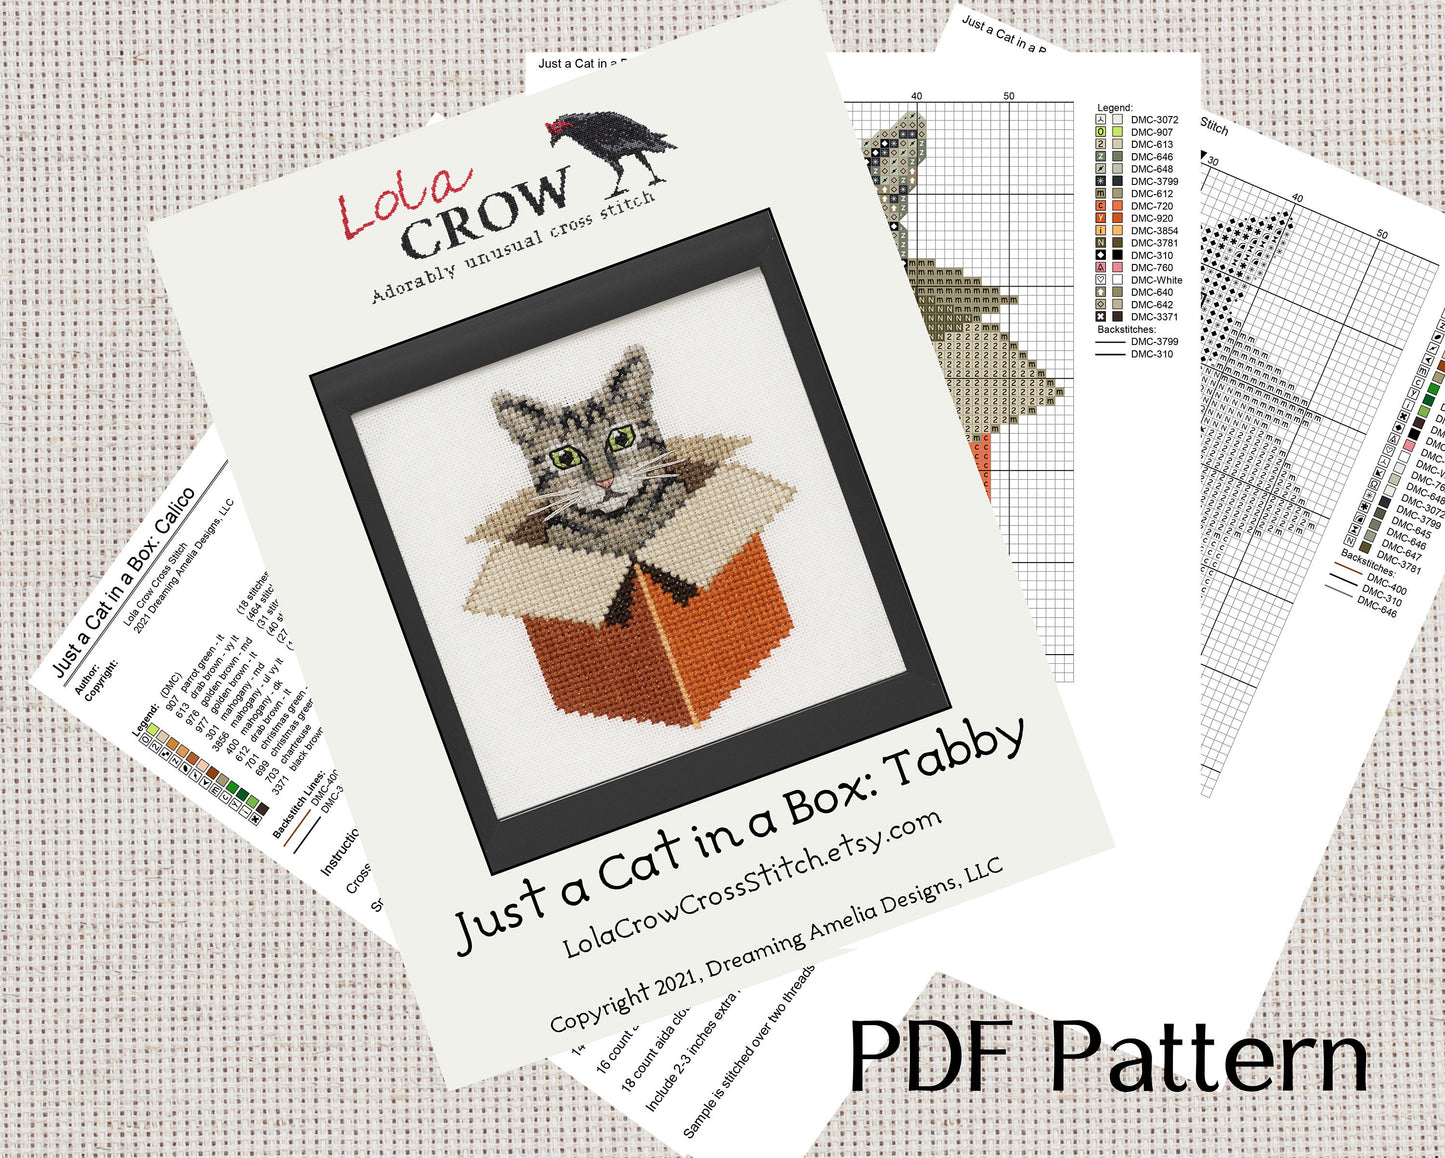 Just a Cat in a Box: Tabby - Digital PDF Cross Stitch Pattern